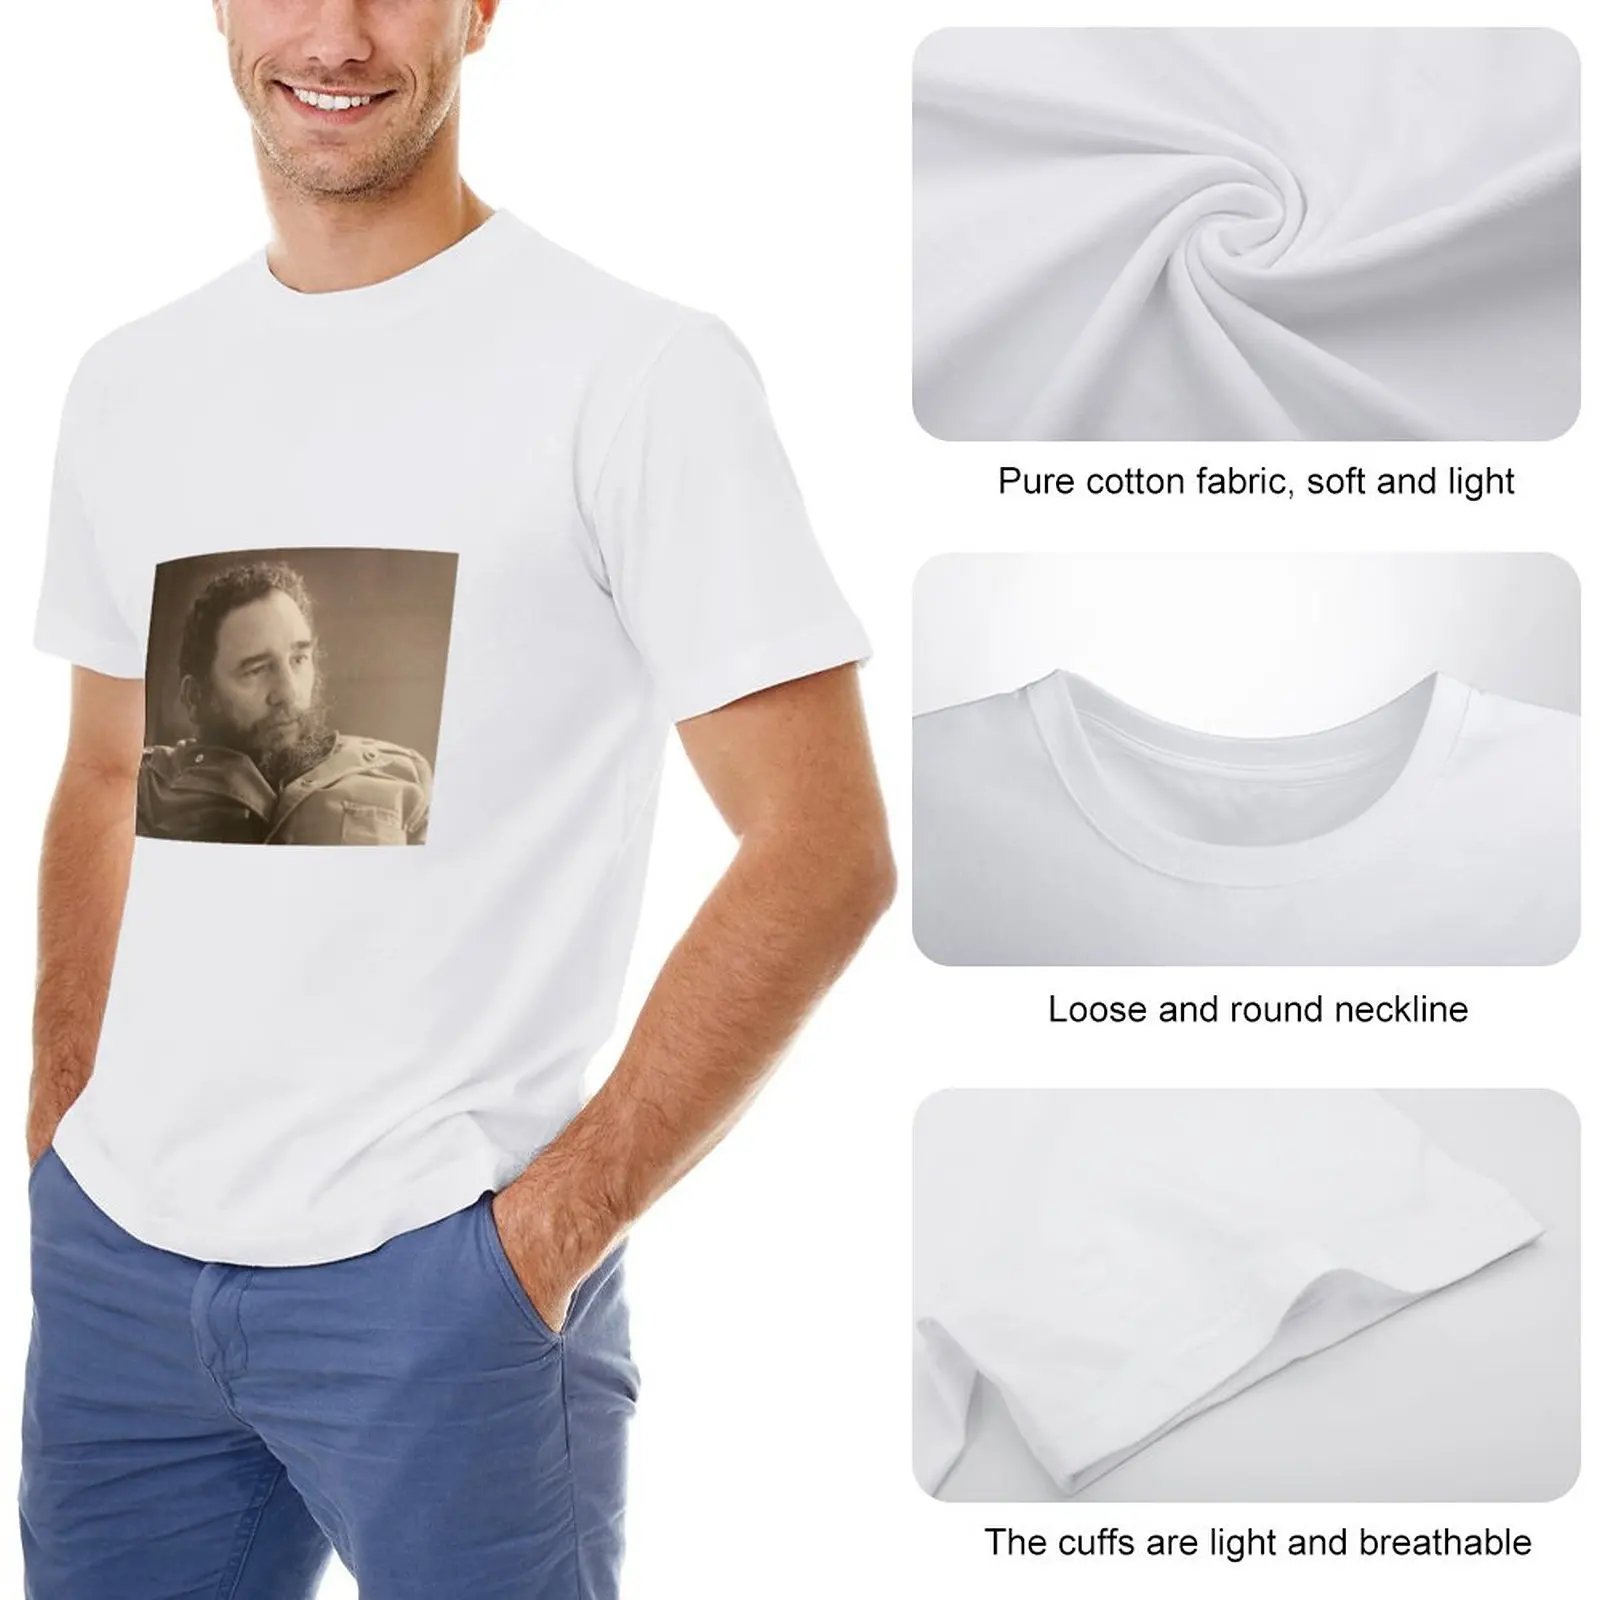 Футболка Fidel in Thought винтажная футболка плюс размер топы индивидуальные футболки мужские футболки повседневные стильные Изображение 1